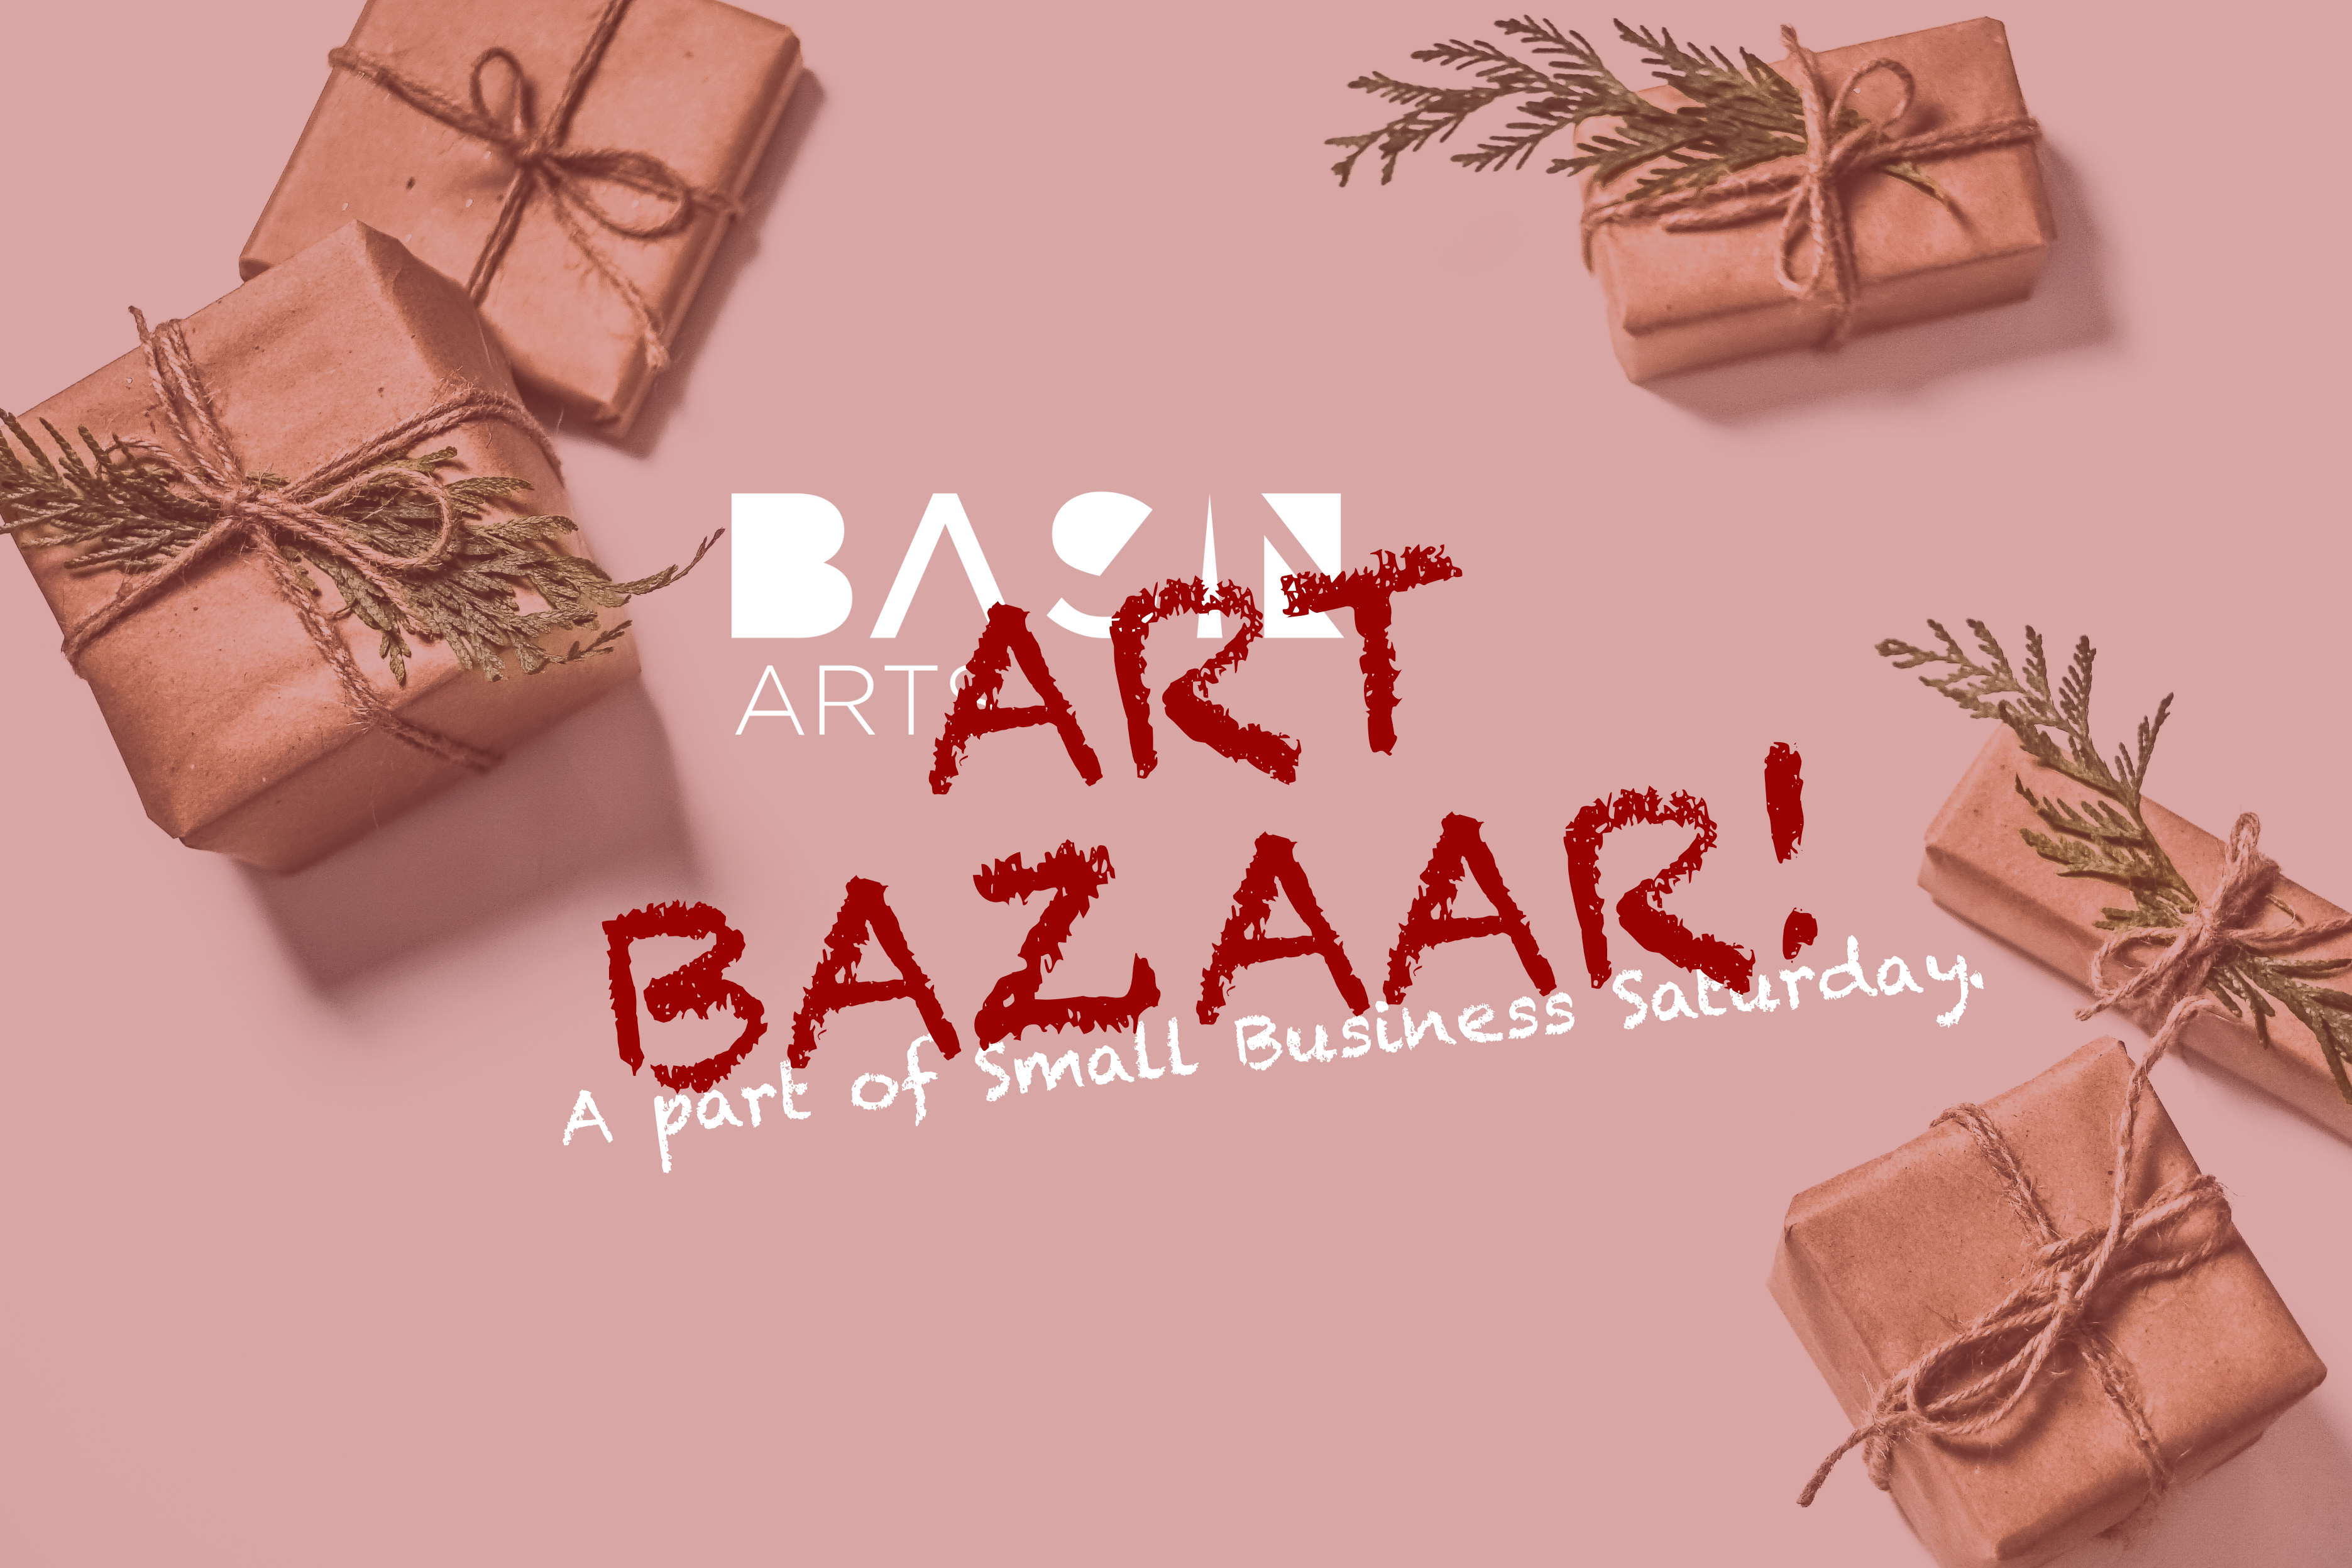 Art Bazaar 2019 Presents